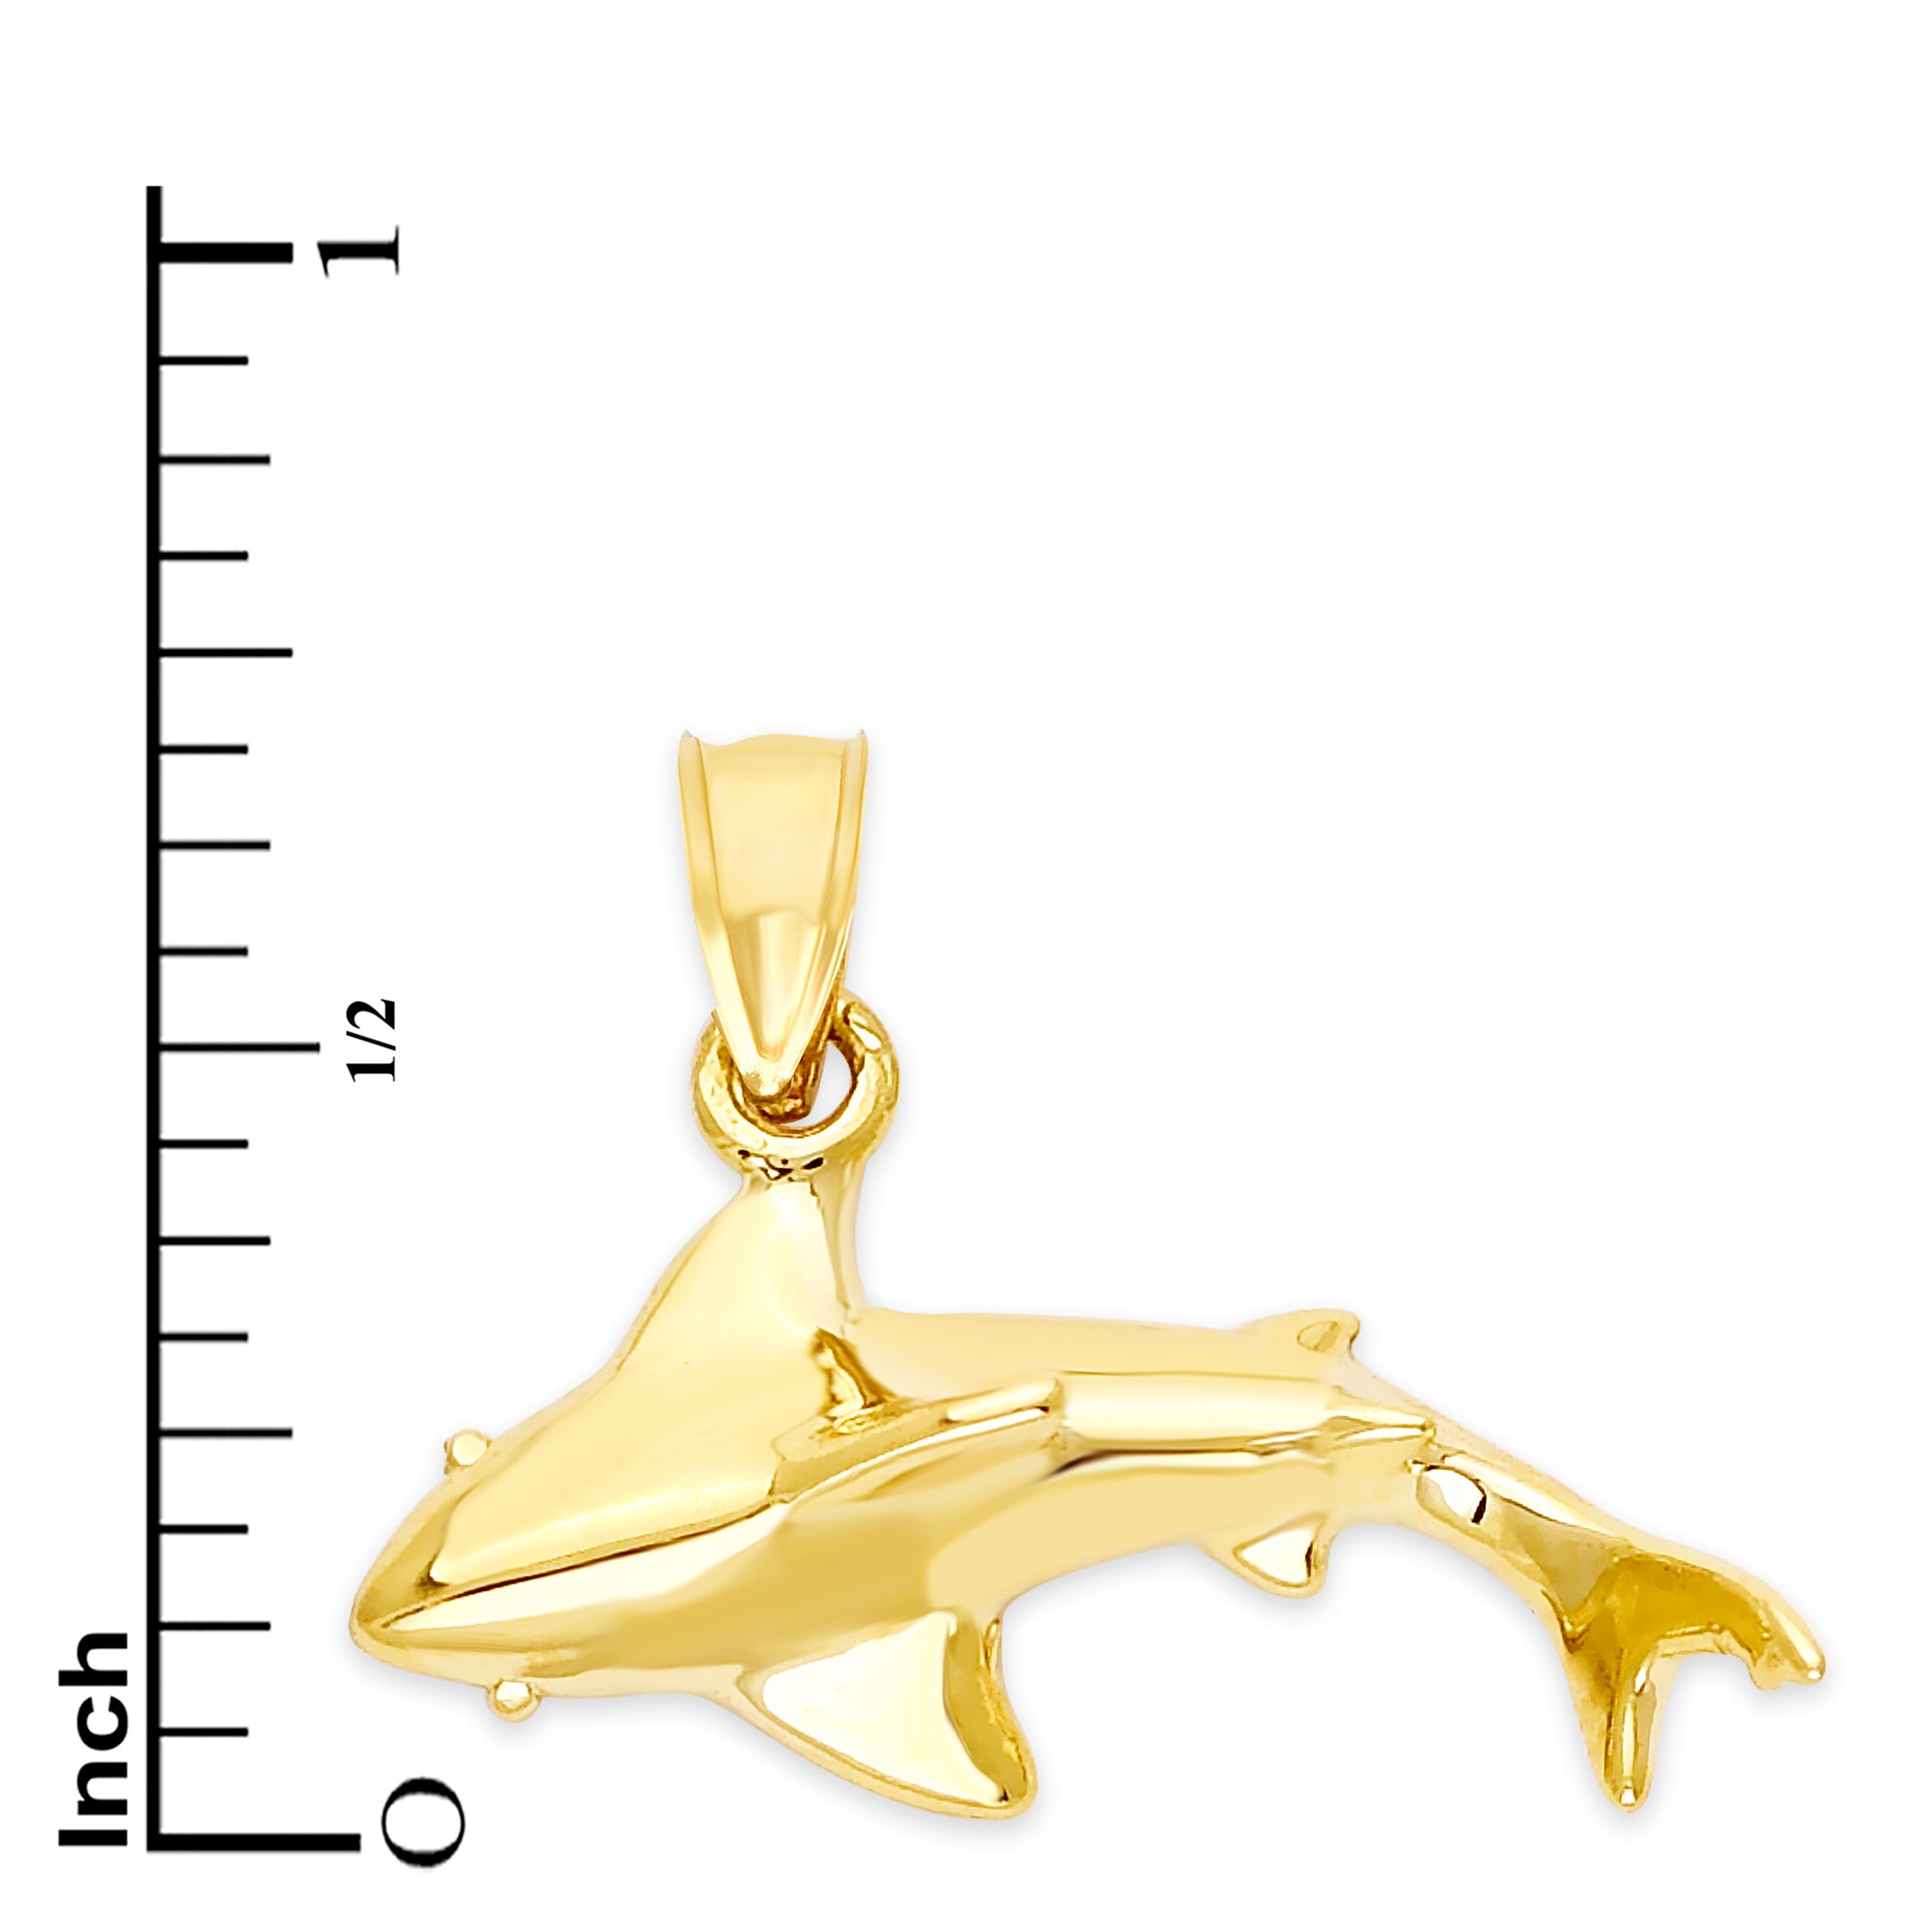 Solid Gold Shark Pendant - 10k or 14k